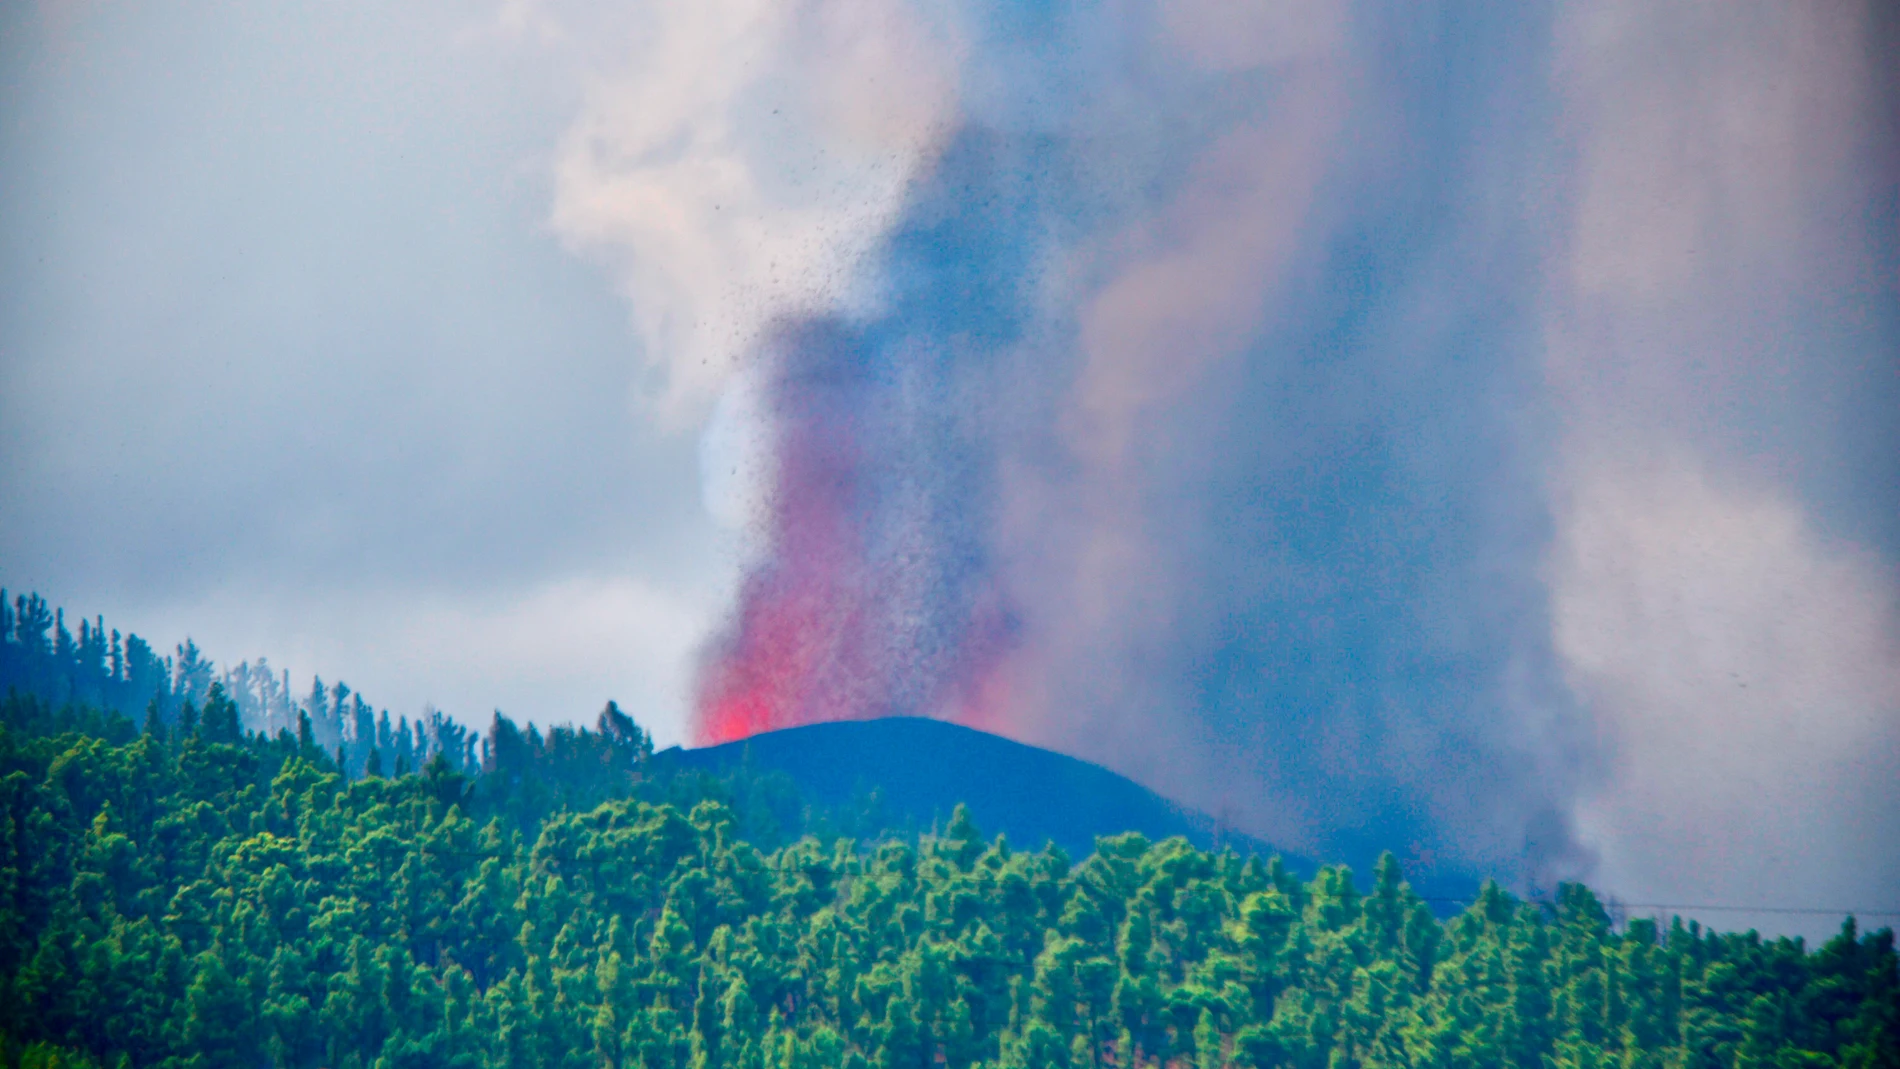 El nuevo volcán que estalló este domingo en La Palma está emitiendo de 6.000 a 9.000 toneladas diarias de dióxiodo de azufre (SO2) y ha formado una colada con una altura media de seis metros que avanza a 700 metros por hora, arrasando a su paso casas, cultivos e infraestructuras.